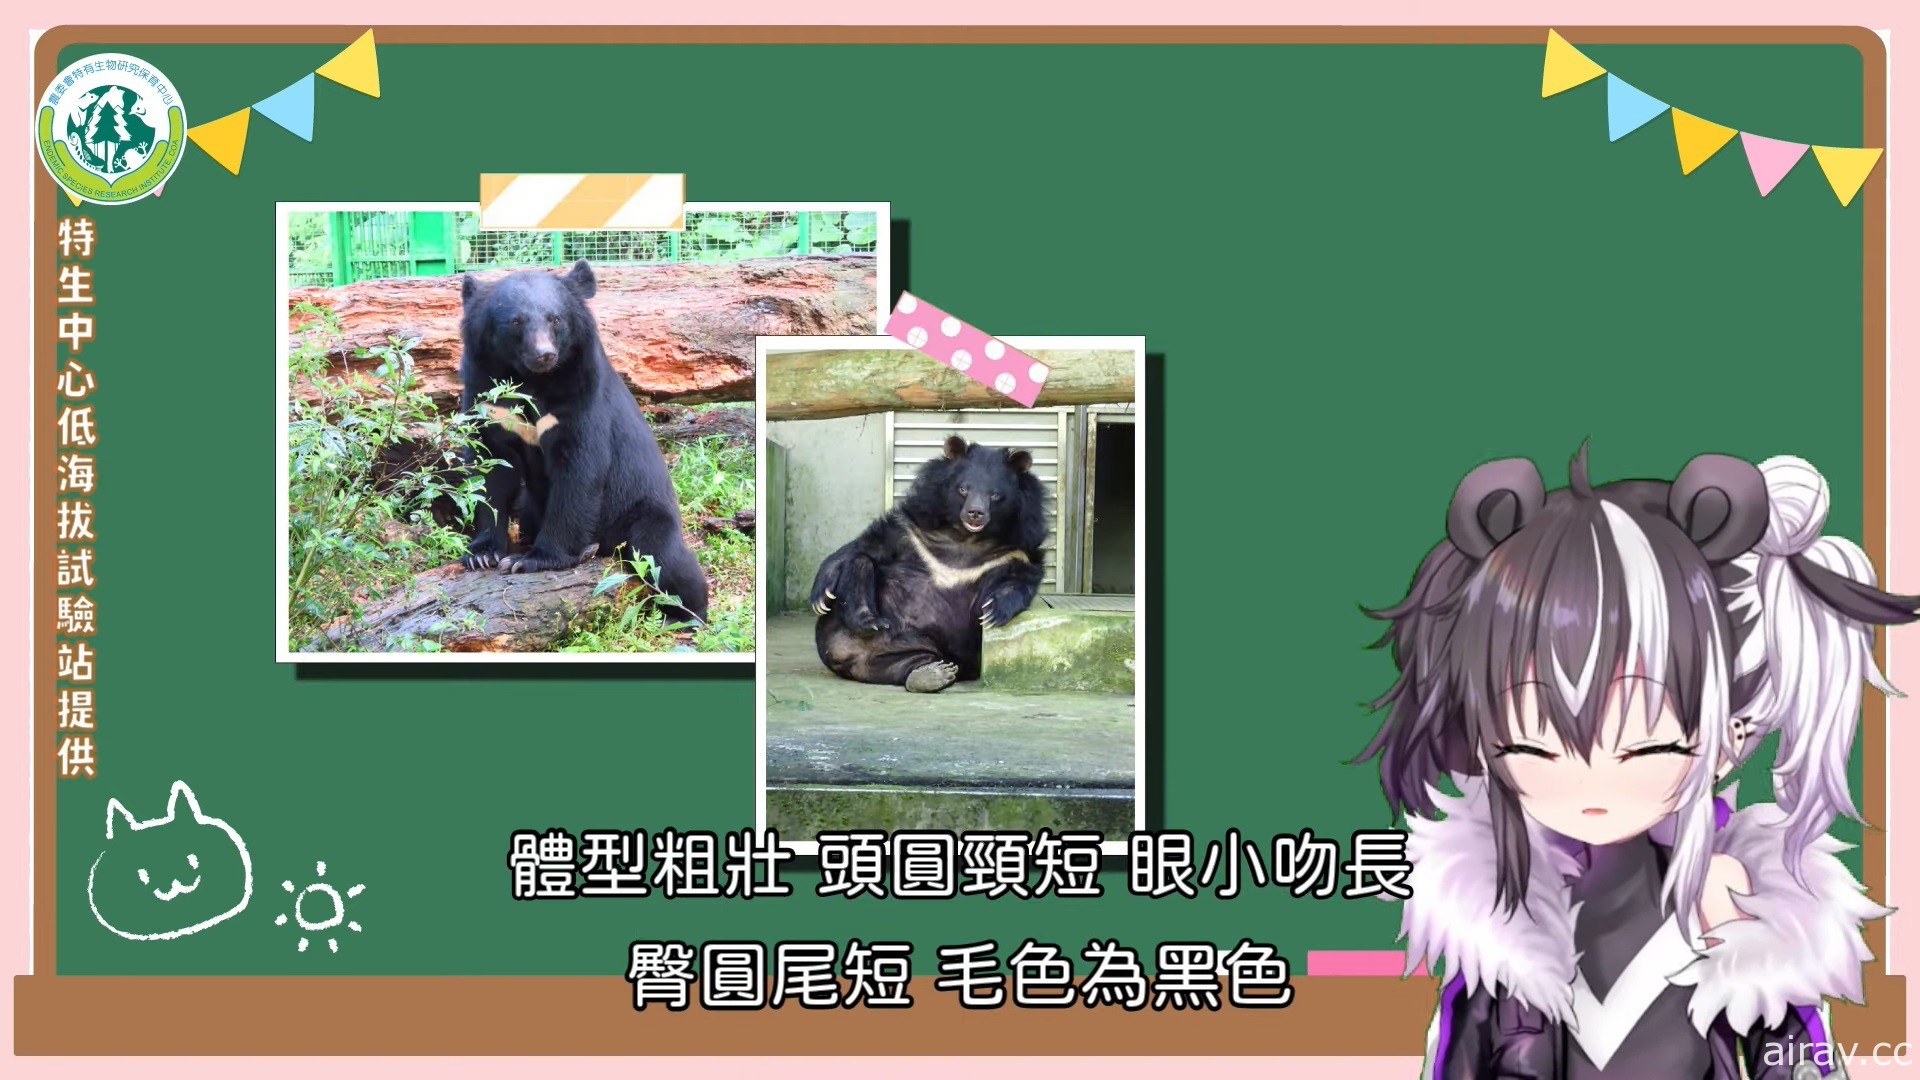 臺灣黑熊也當 Vtuber？虛擬偶像「歐貝爾」推廣黑熊保育知識